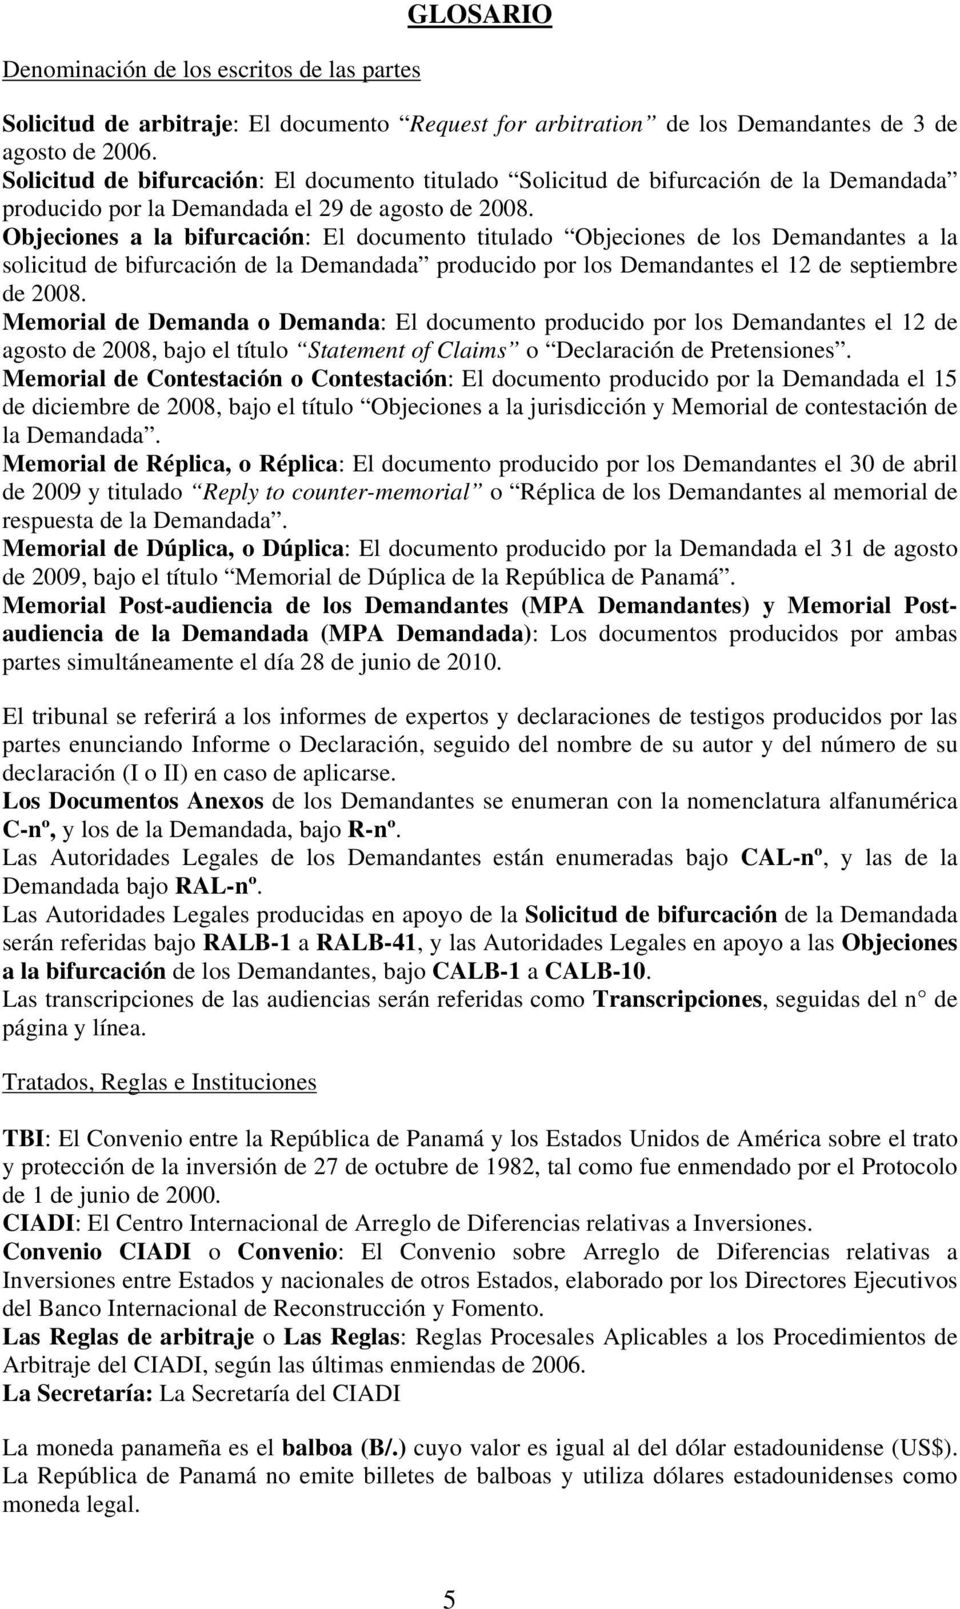 Objeciones a la bifurcación: El documento titulado Objeciones de los Demandantes a la solicitud de bifurcación de la Demandada producido por los Demandantes el 12 de septiembre de 2008.